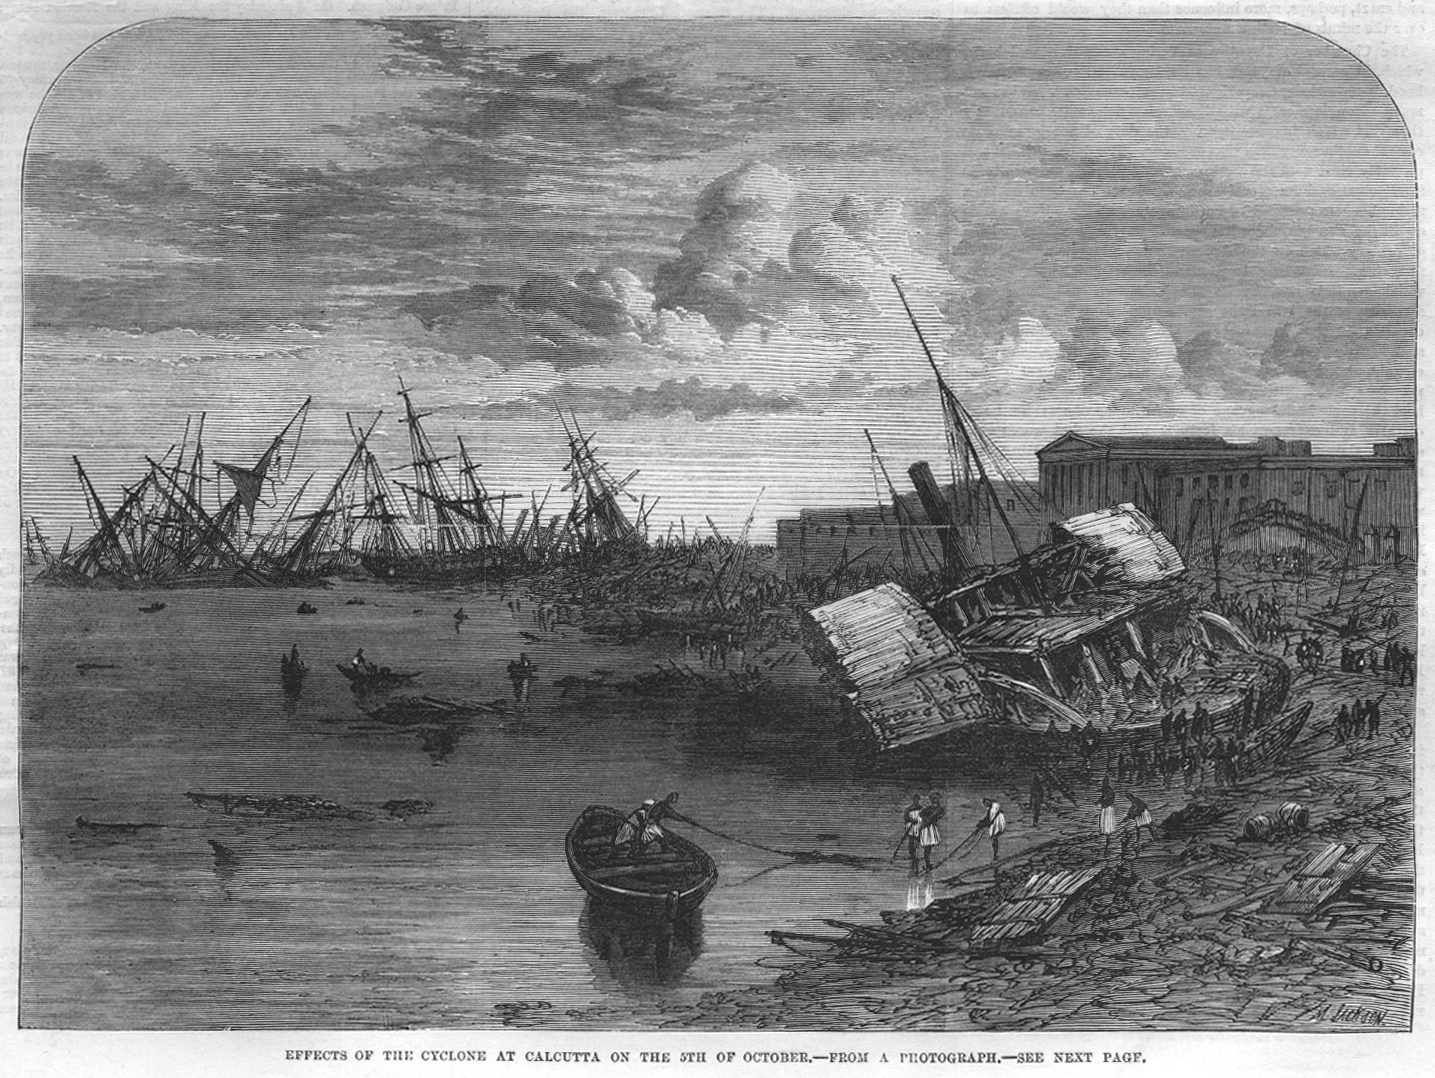 Marele ciclon din Calcutta (1864)